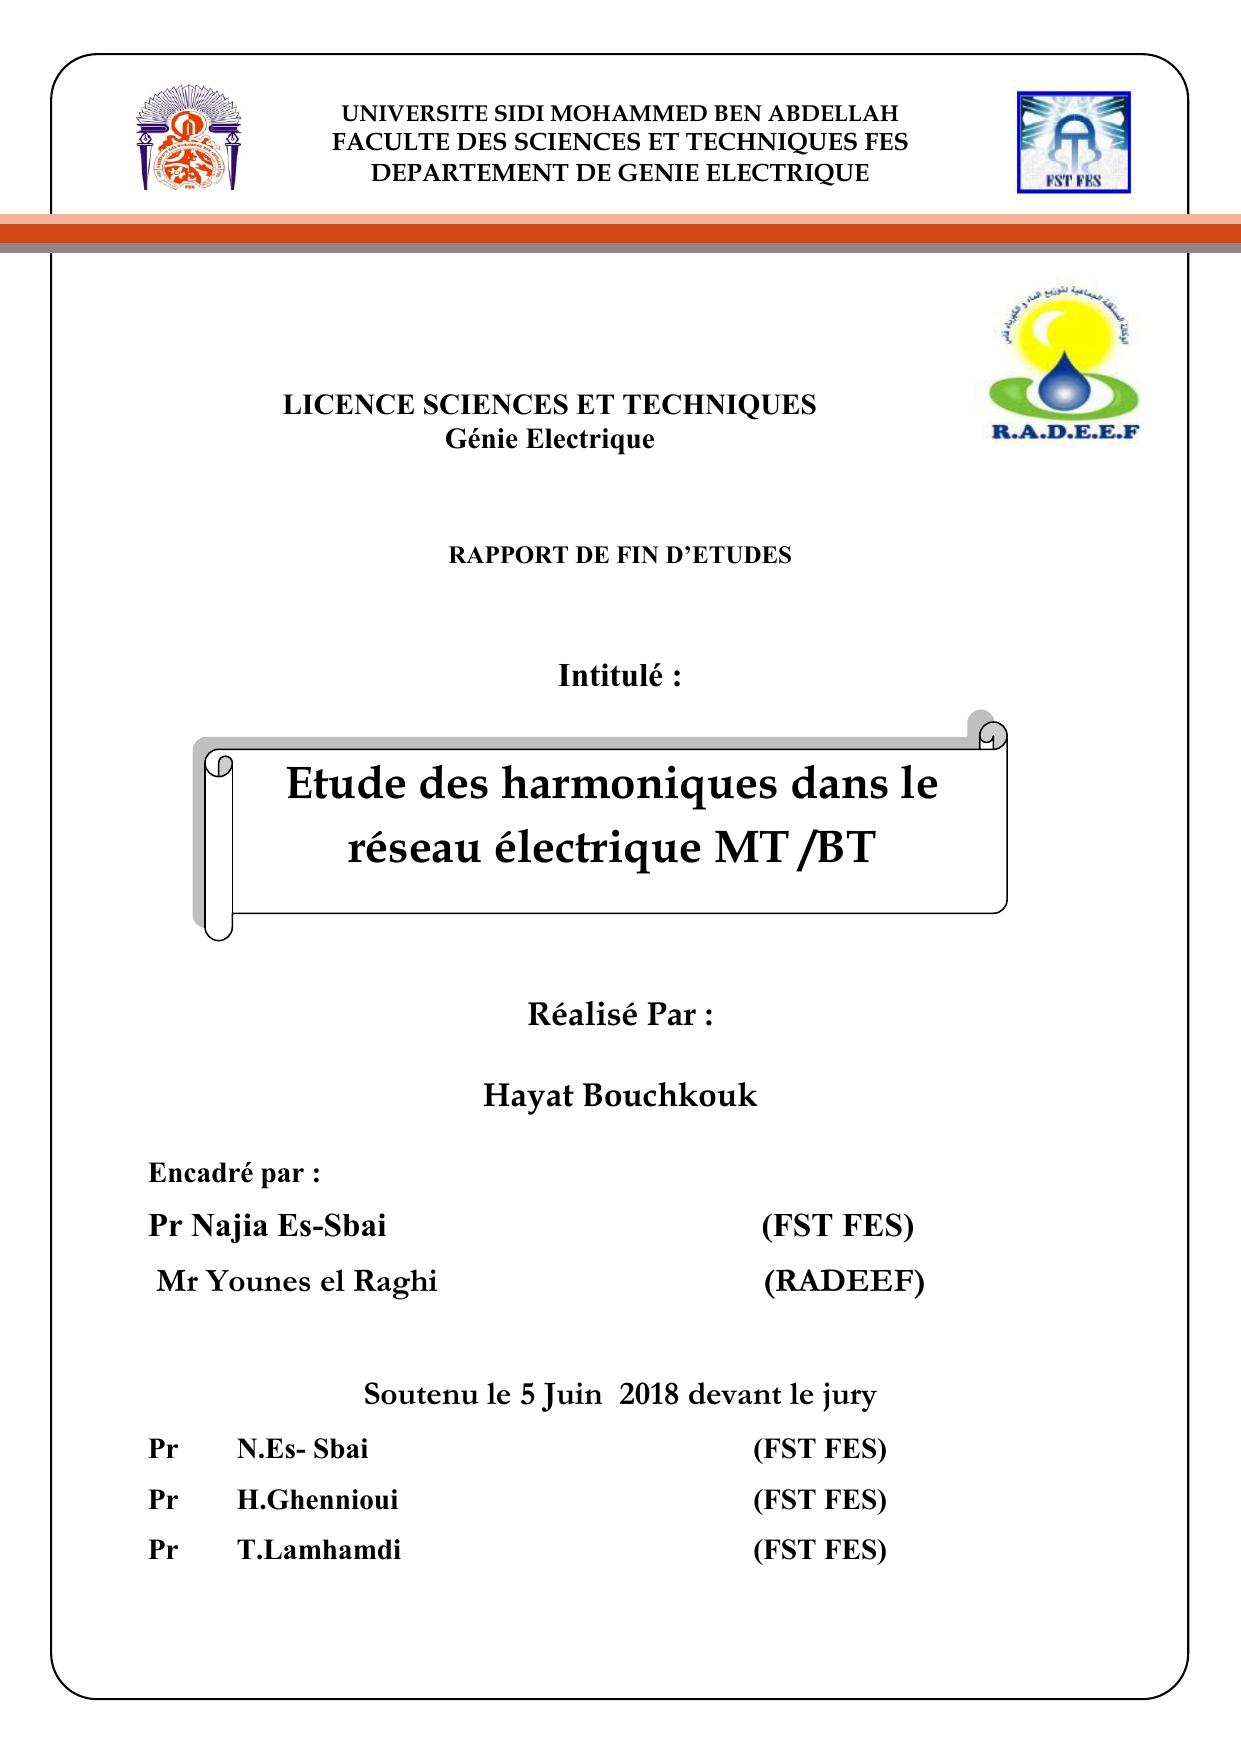 Etude des harmoniques dans le réseau électrique MT /BT